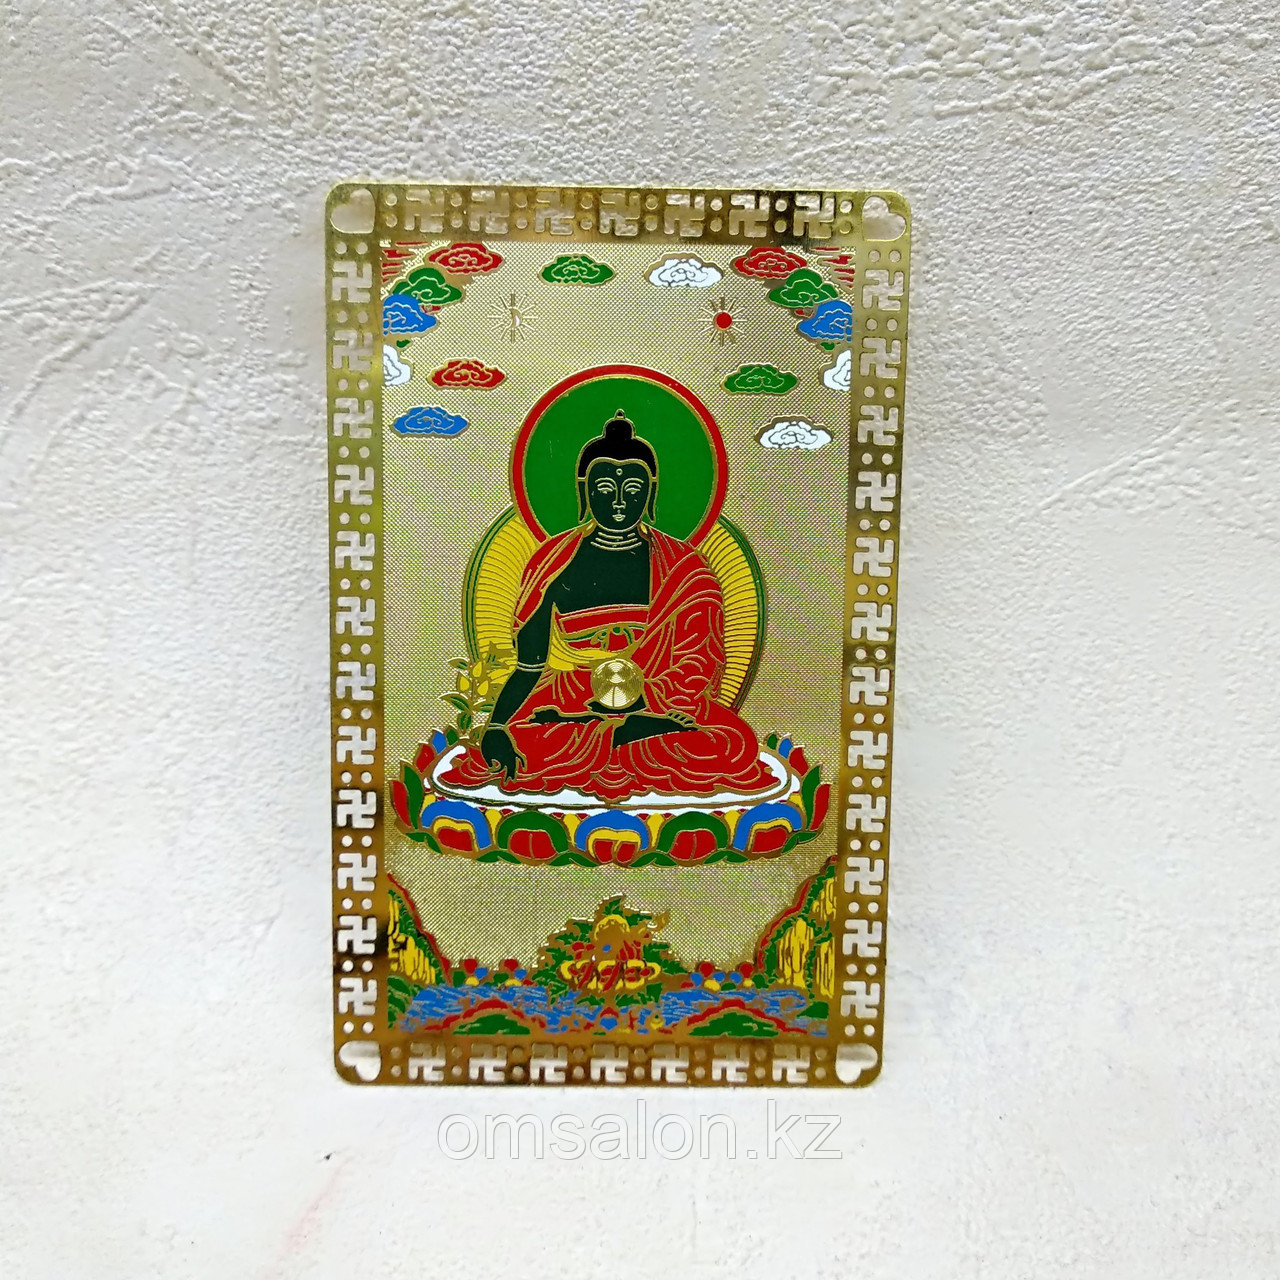 Карточка-амулет Будда Медицины